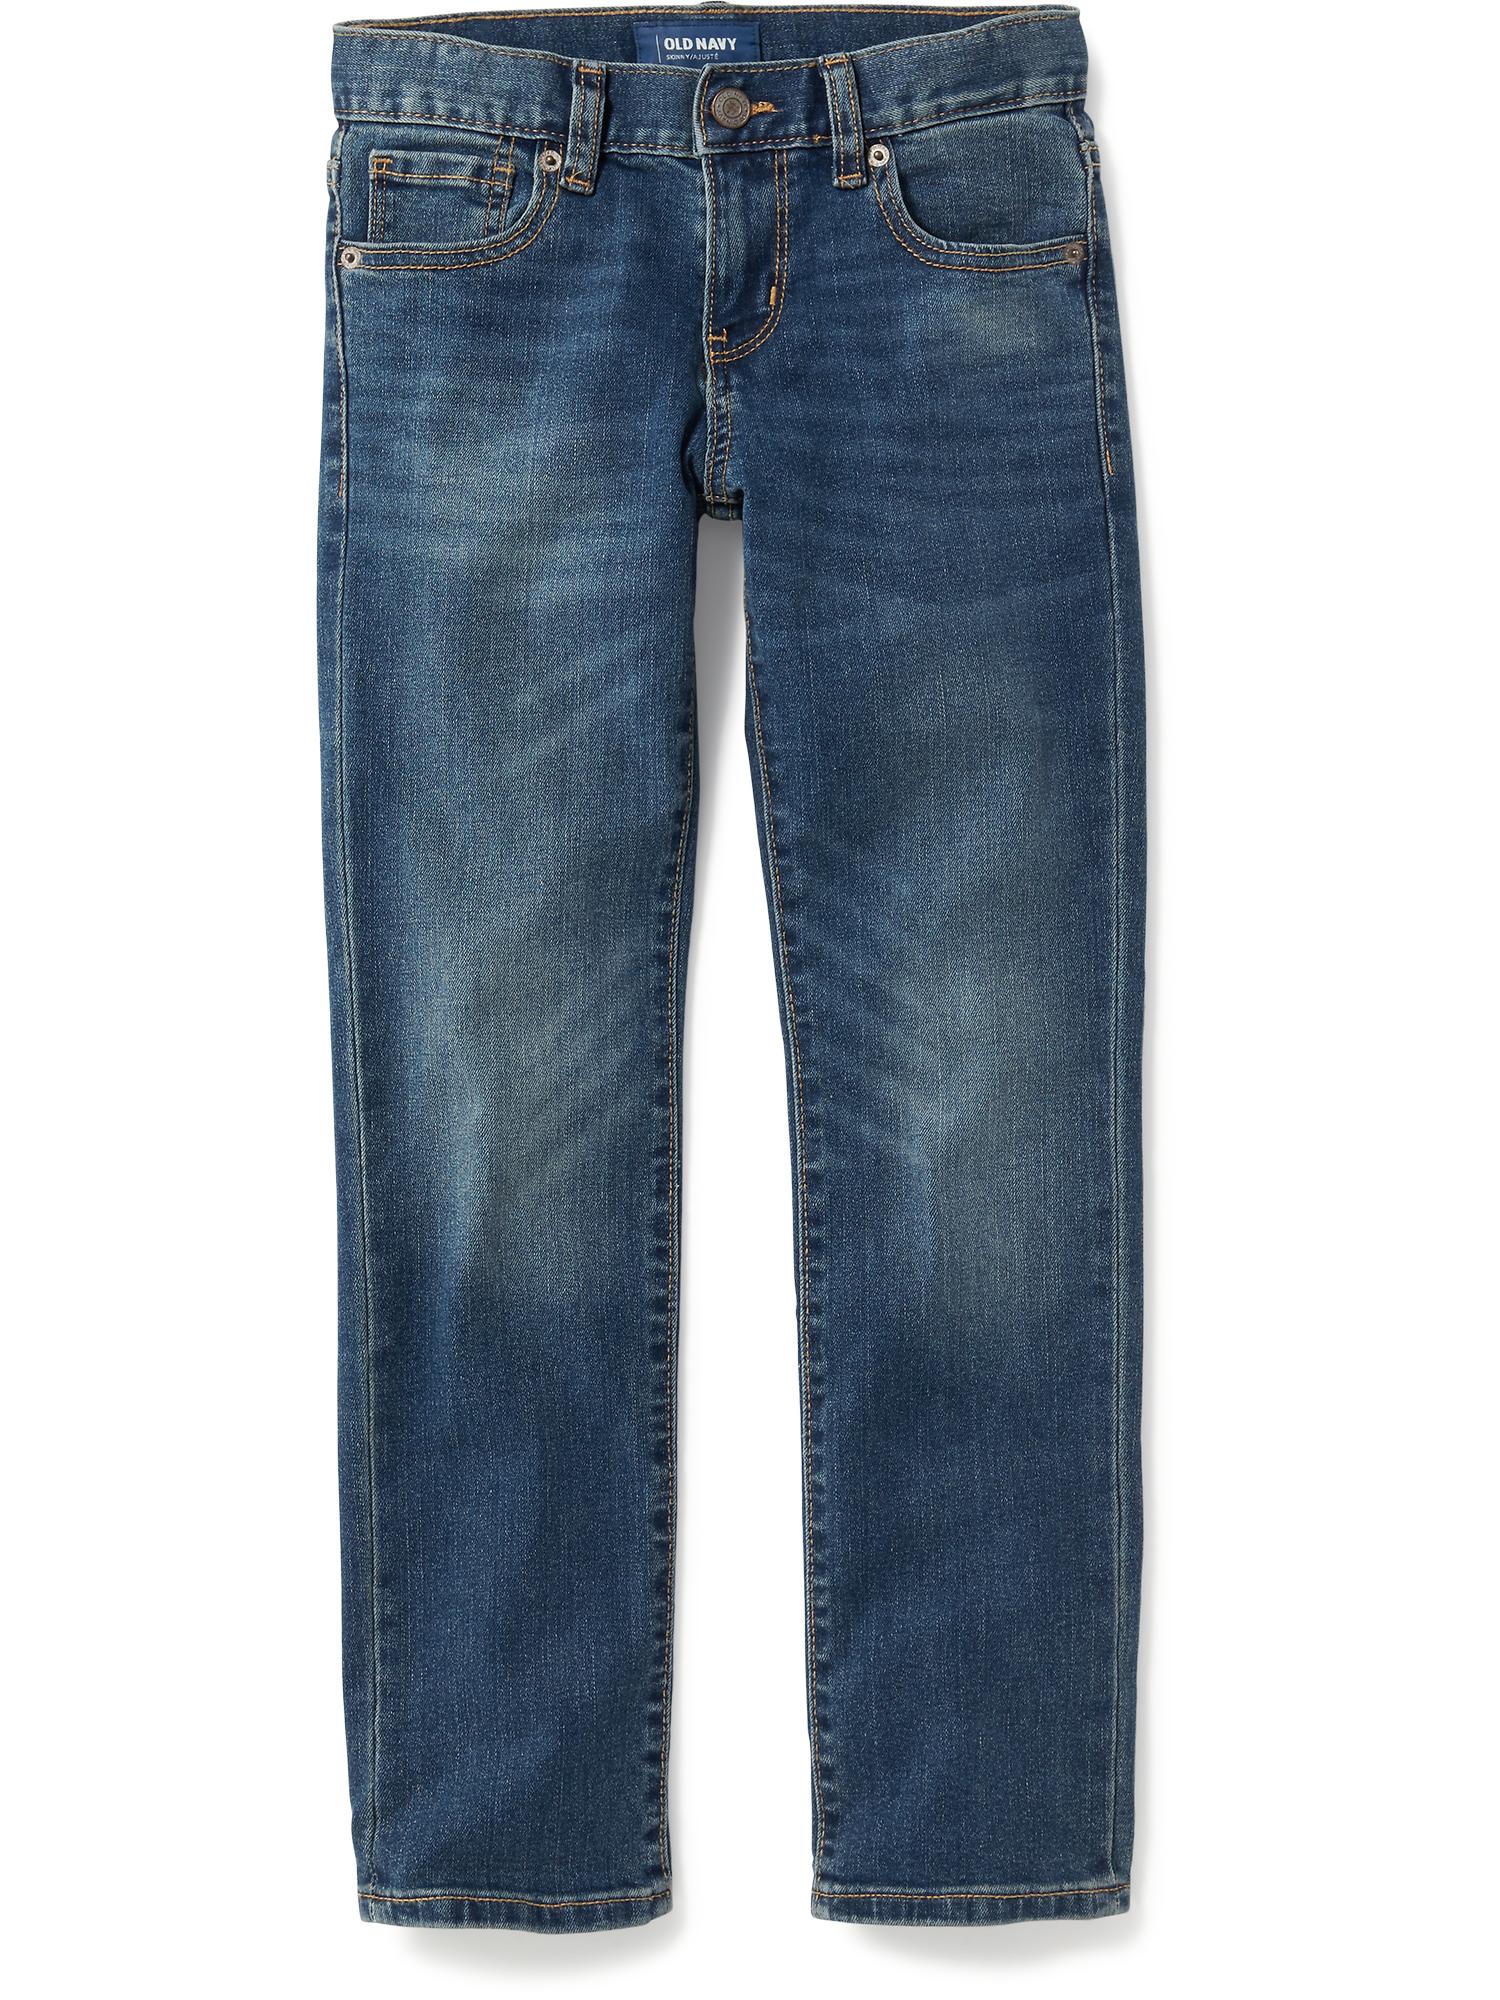 Built-In-Flex Skinny Jeans for Boys 